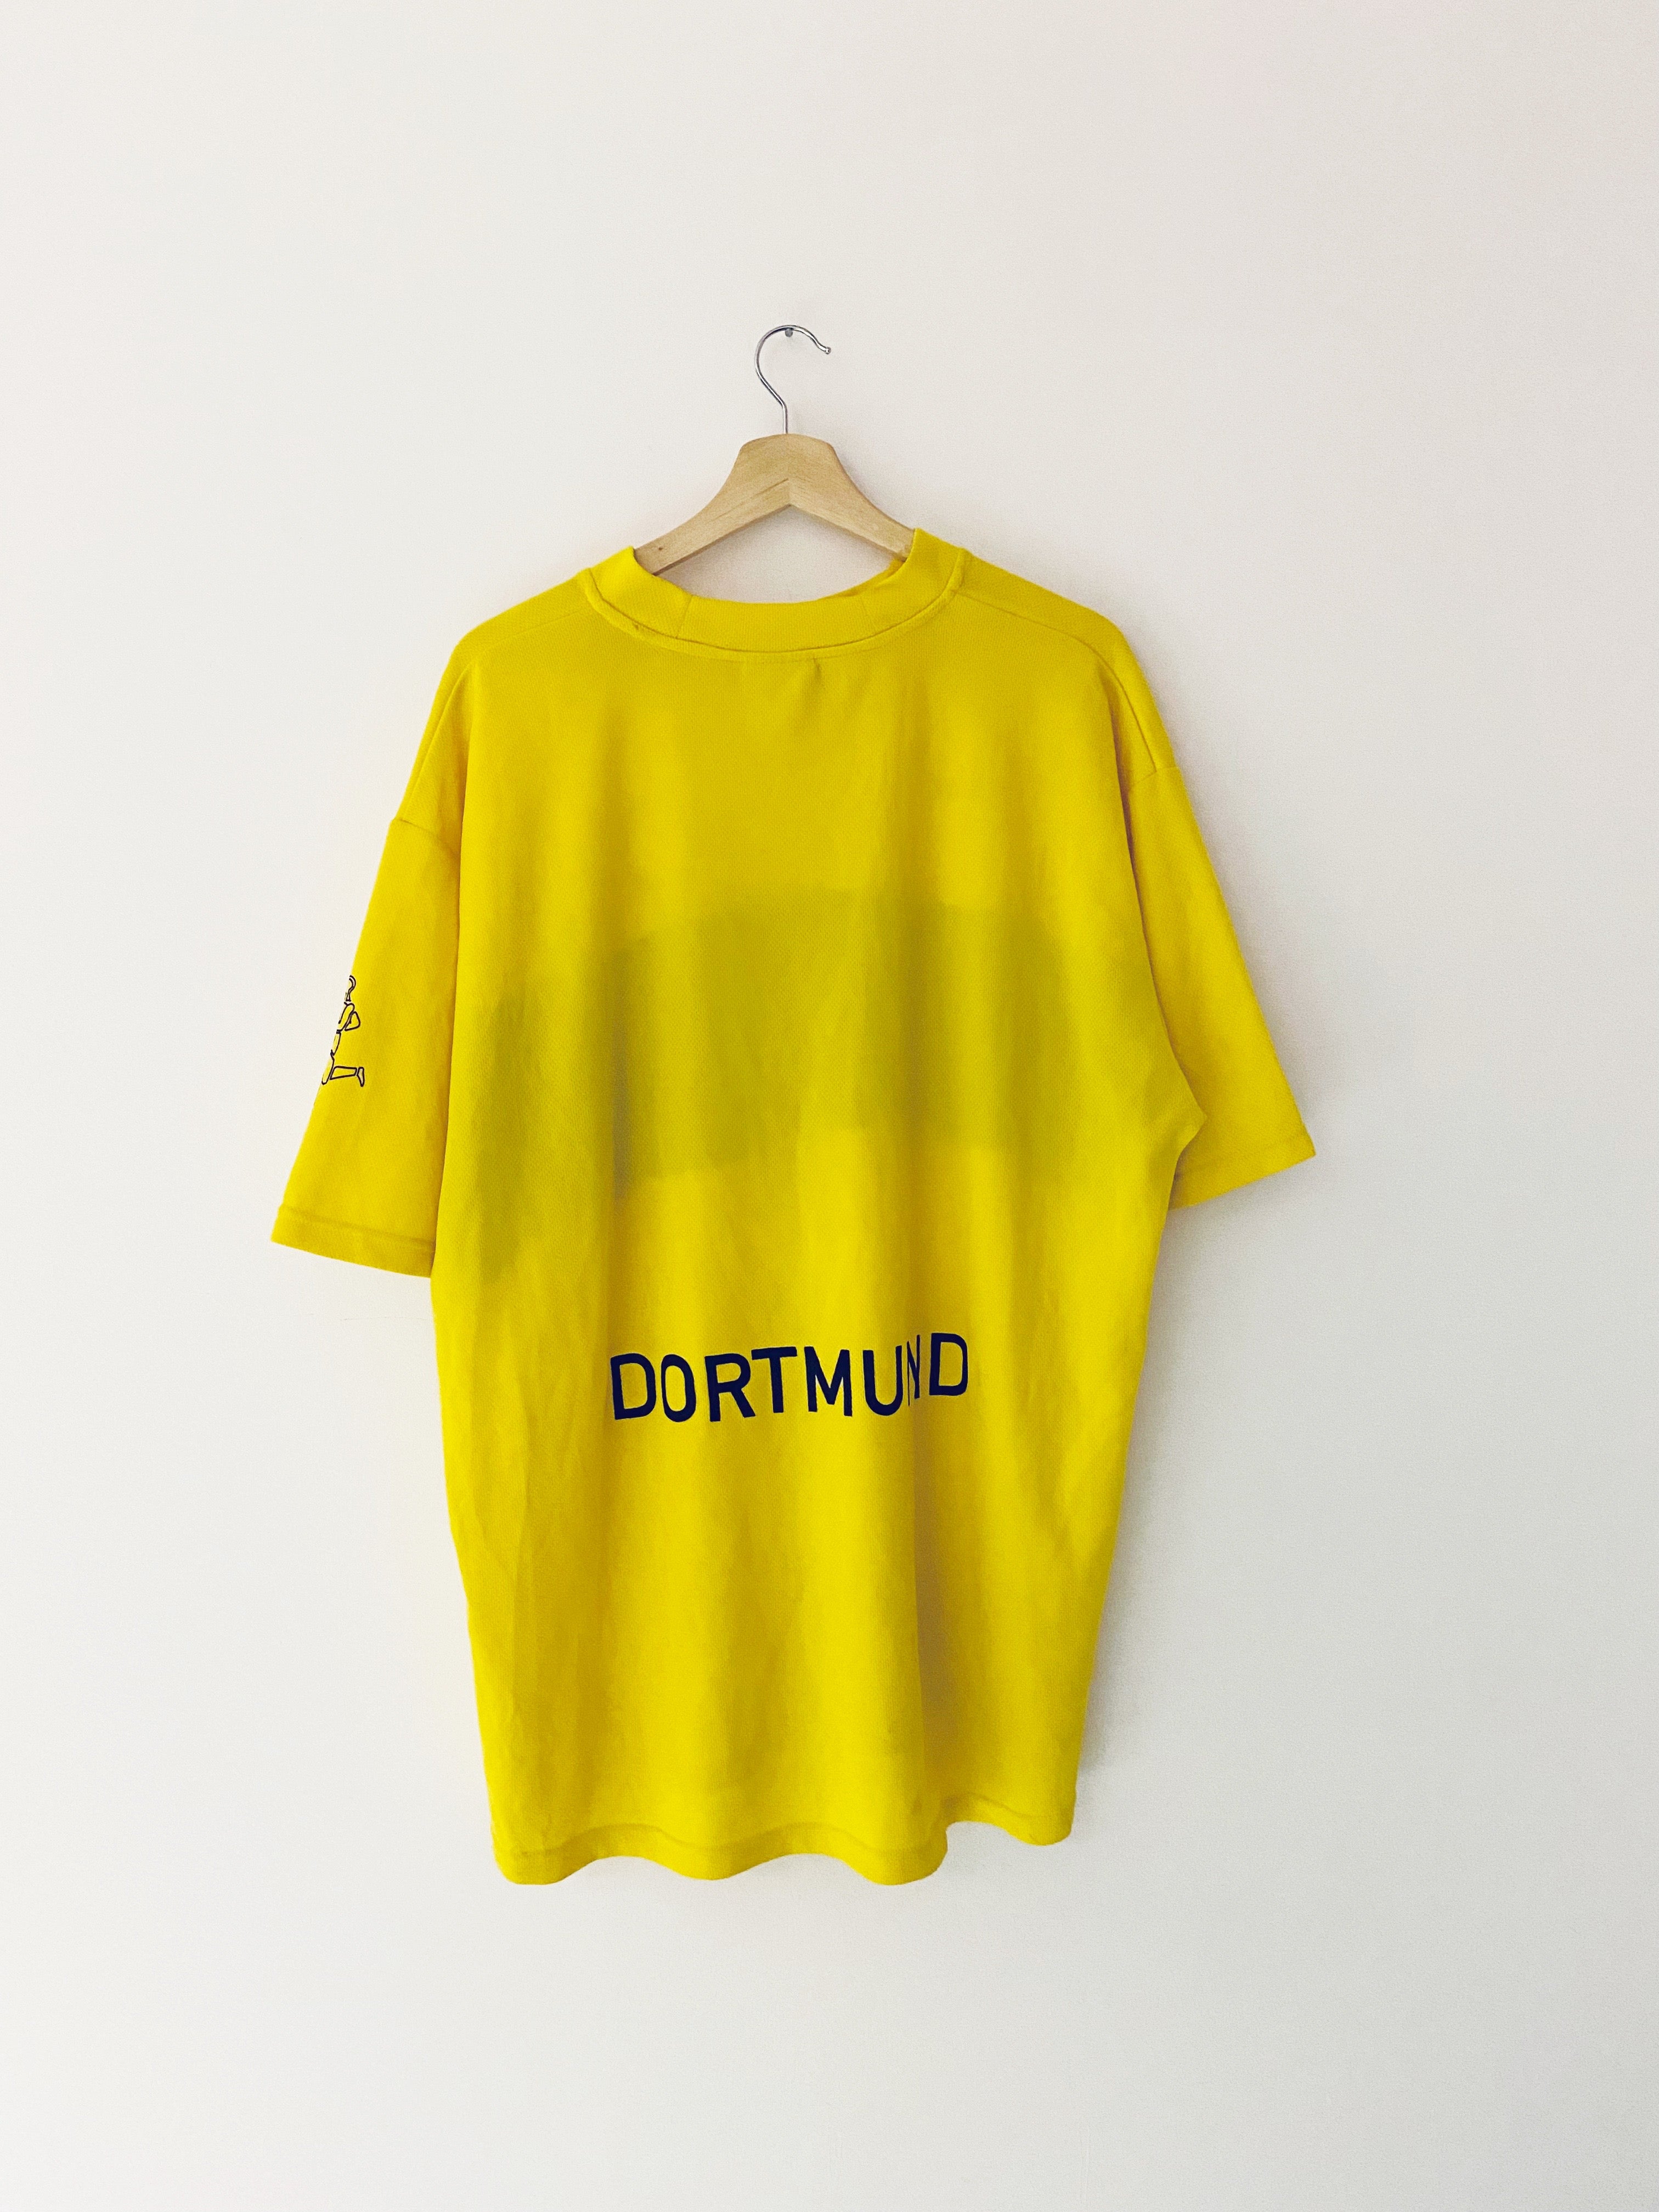 2002/03 Camiseta de local del Borussia Dortmund (XXL) 8/10 